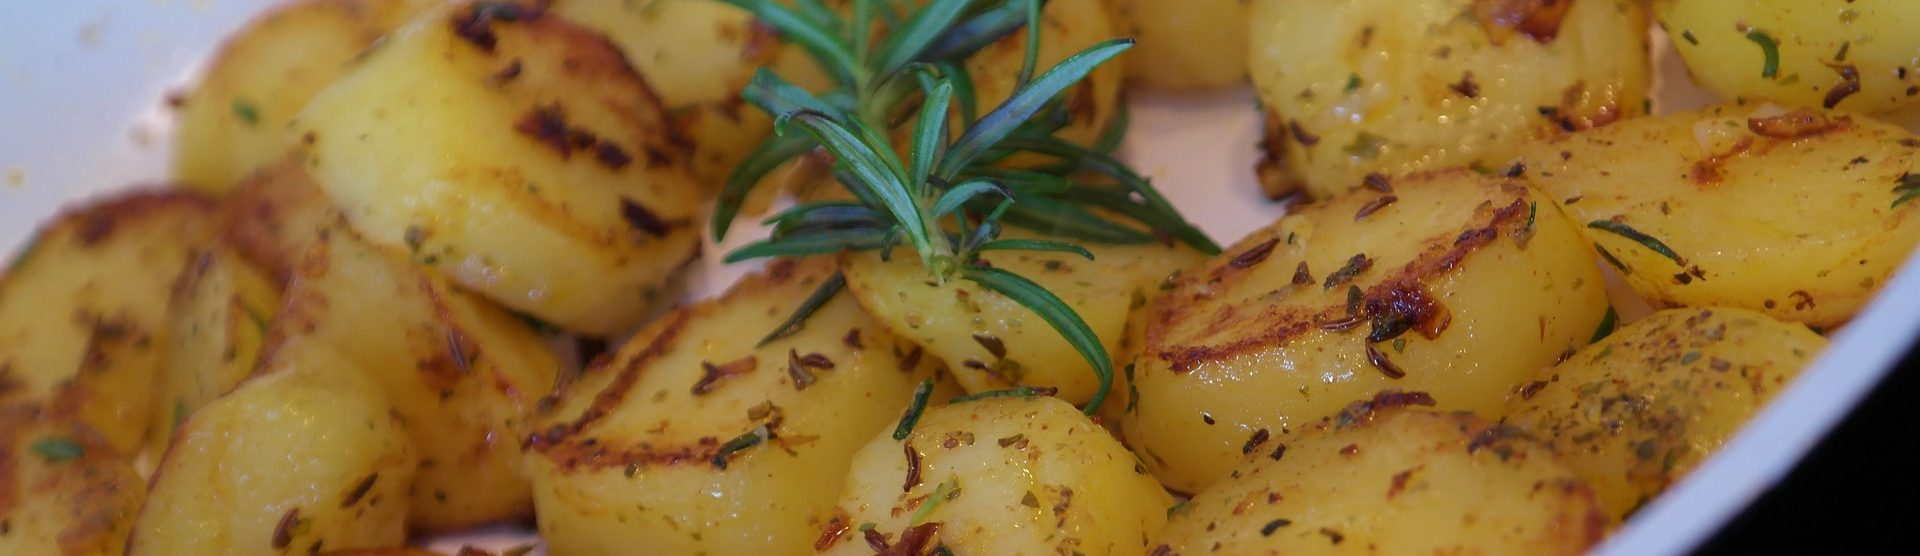 Как пожарить картошку правильно с хрустящей корочкой